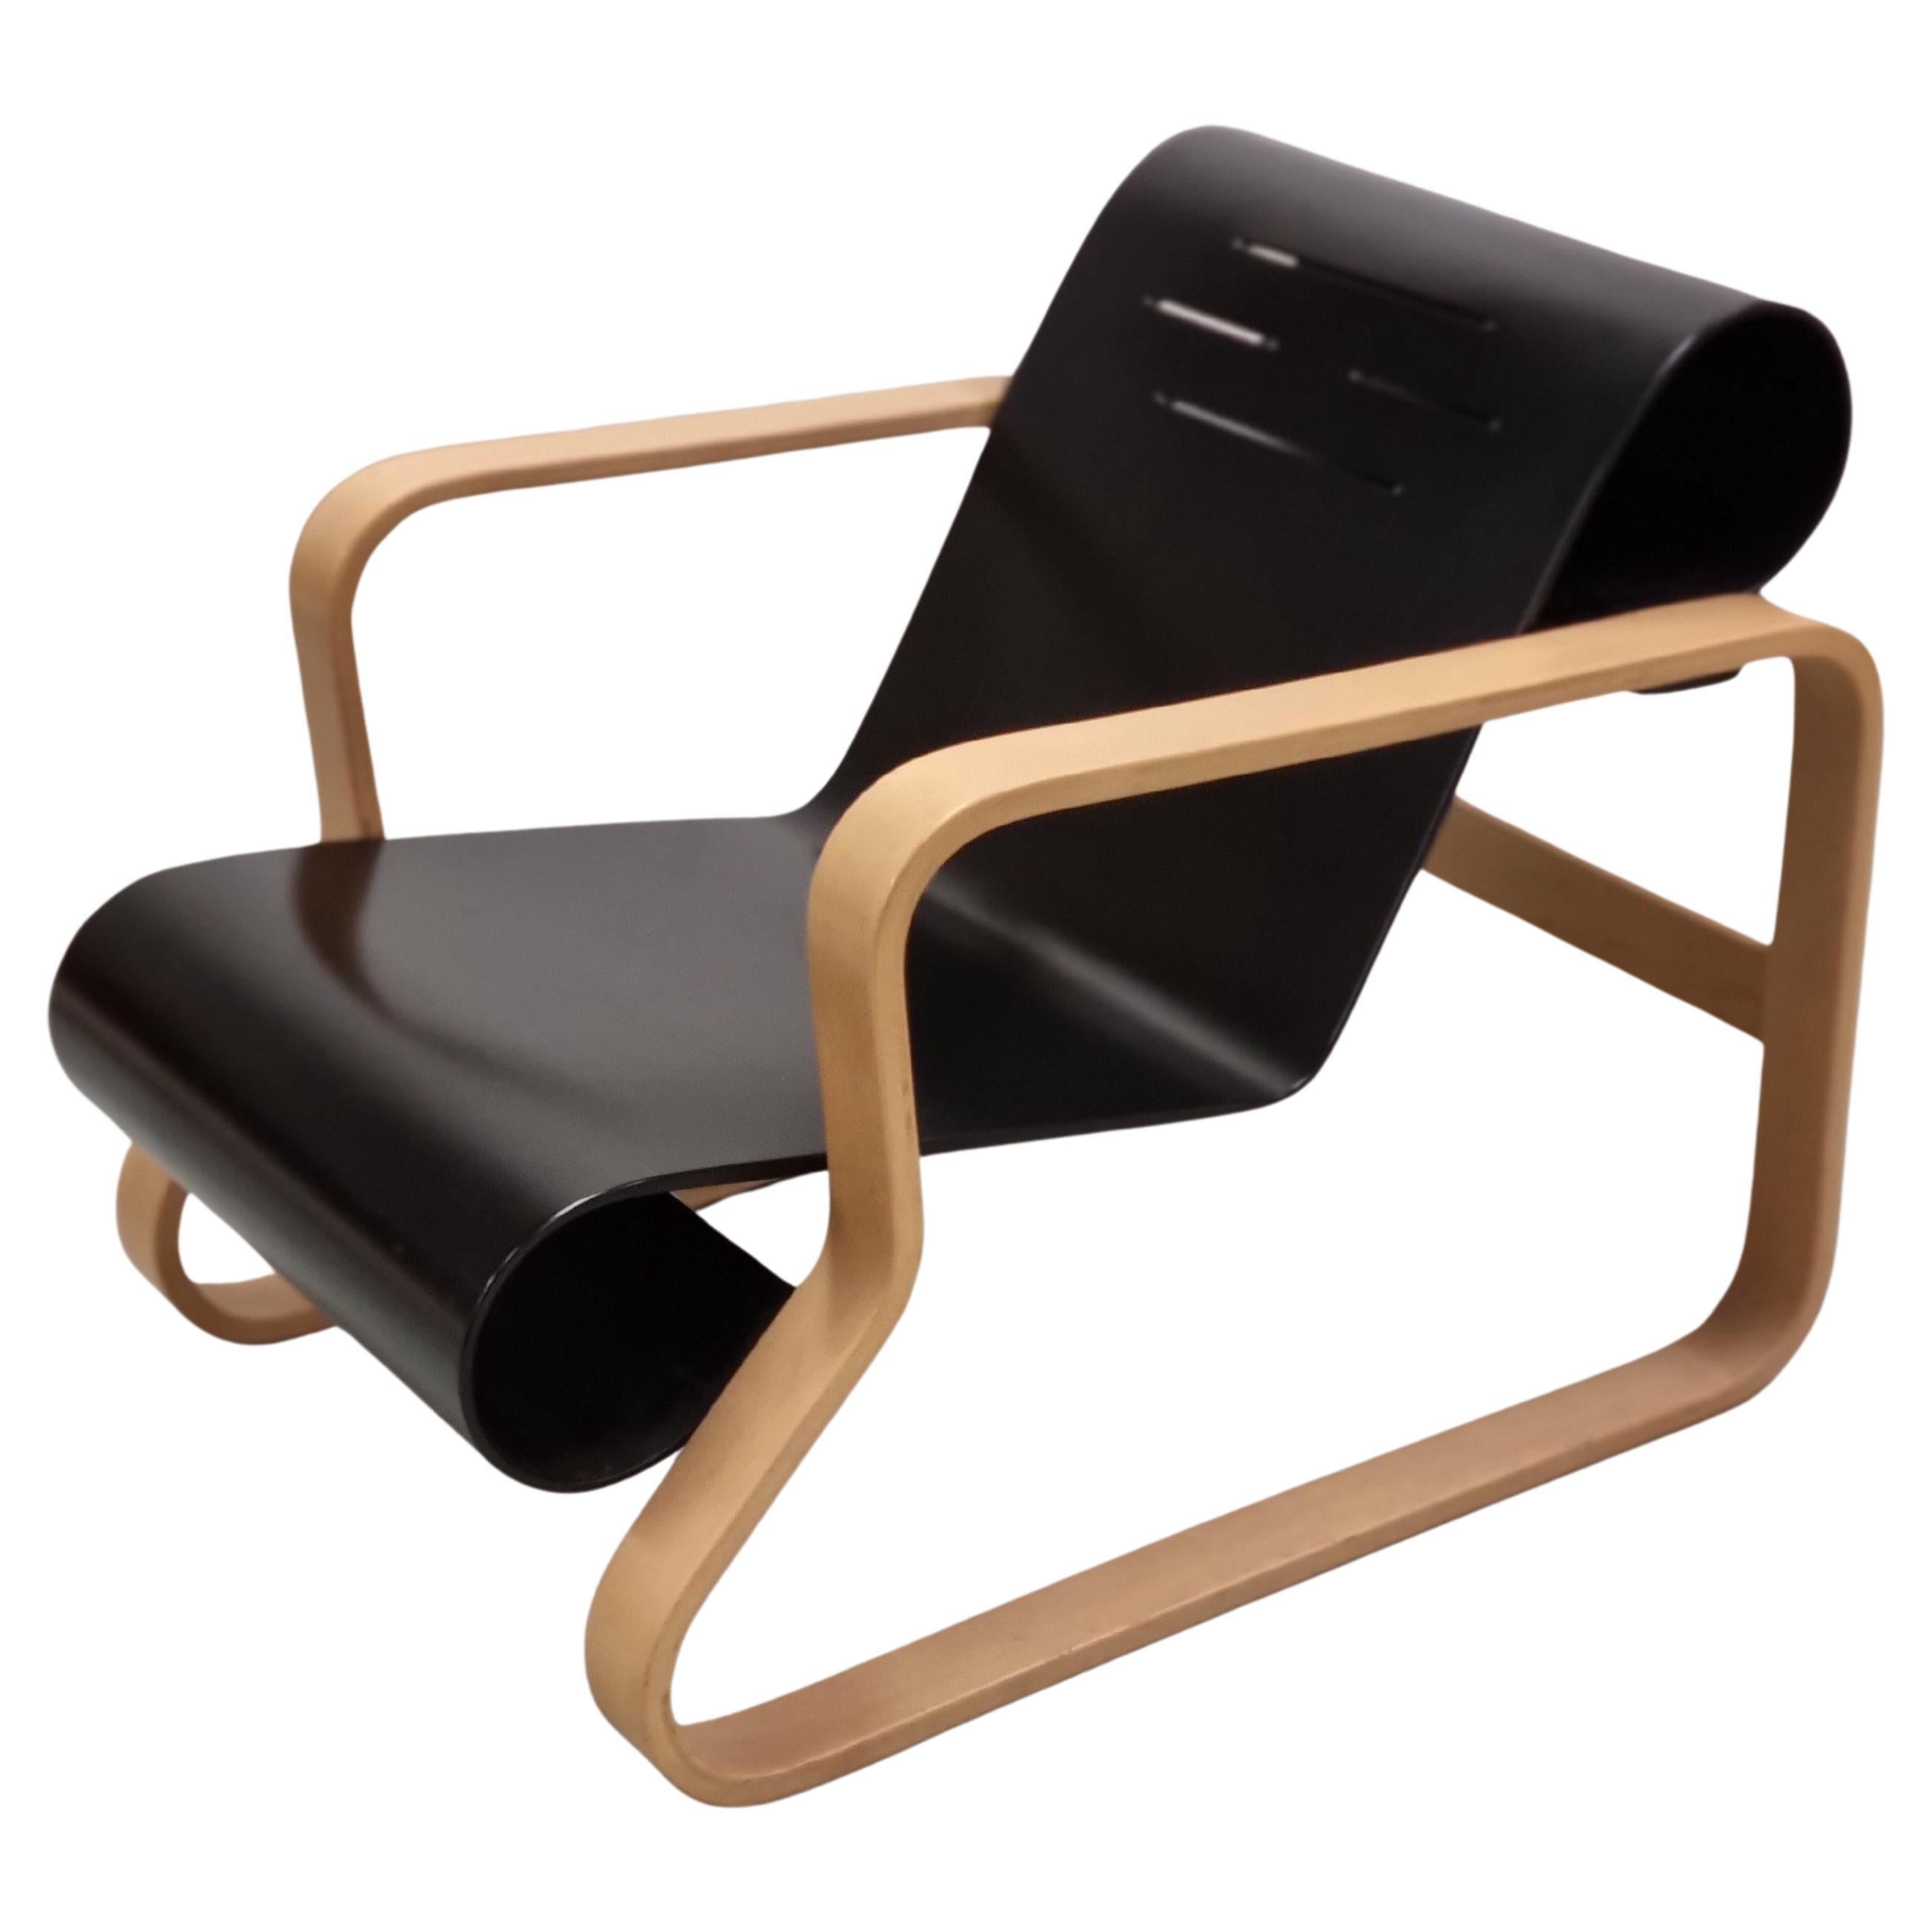 Alvar Aalto, fauteuil de salon Paimio 41, Artek